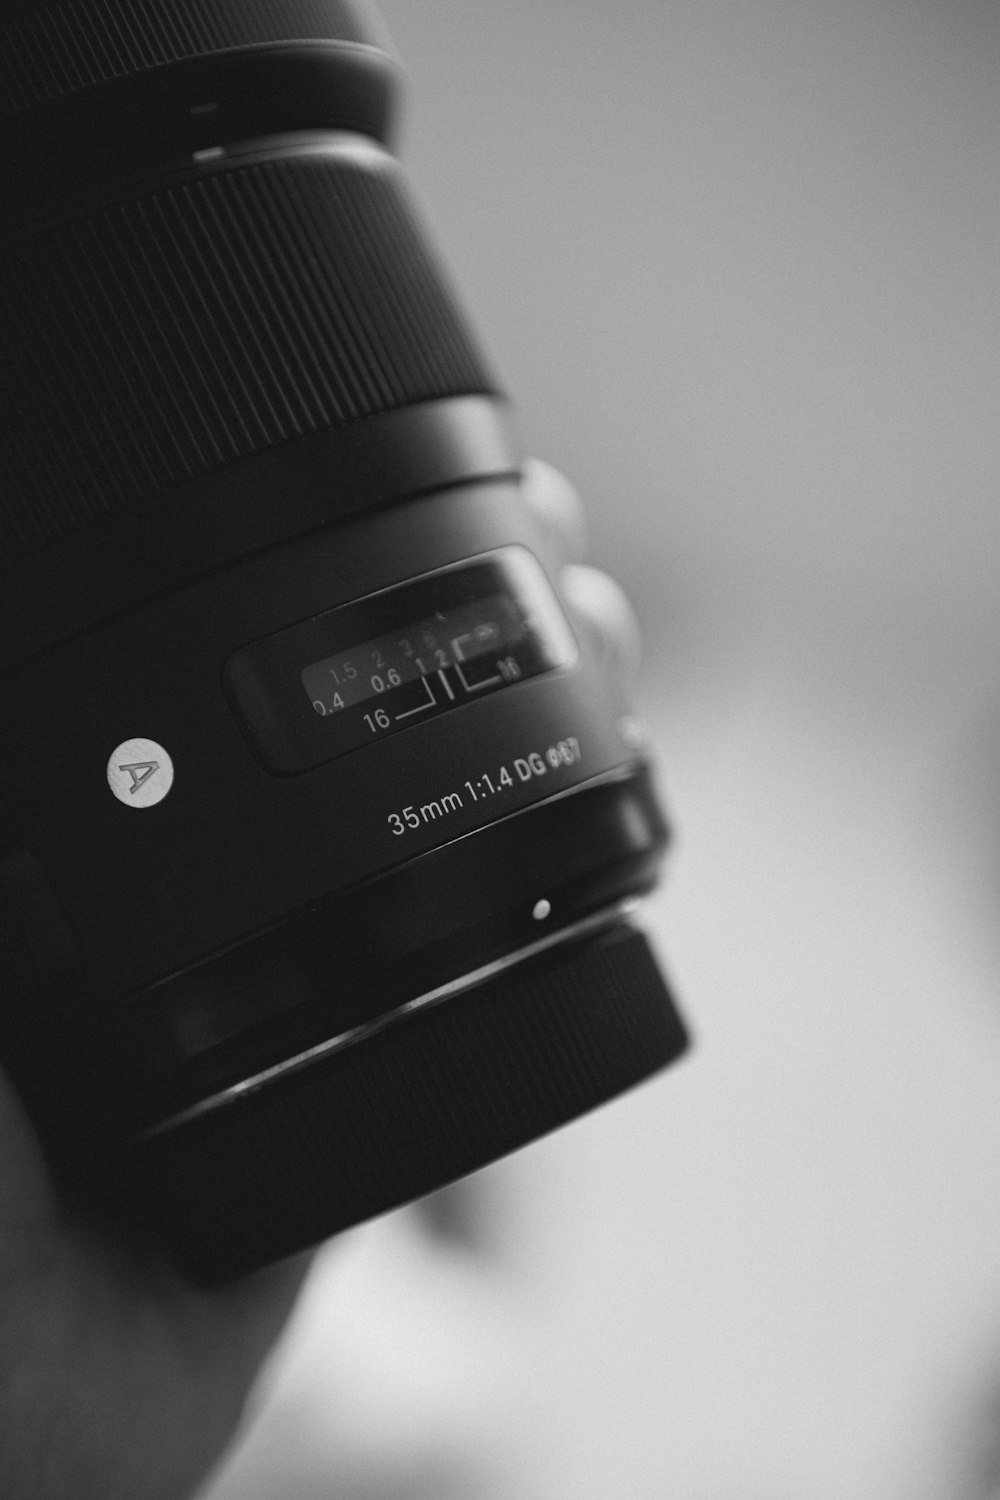 Obiettivo della fotocamera nero nella fotografia in scala di grigi